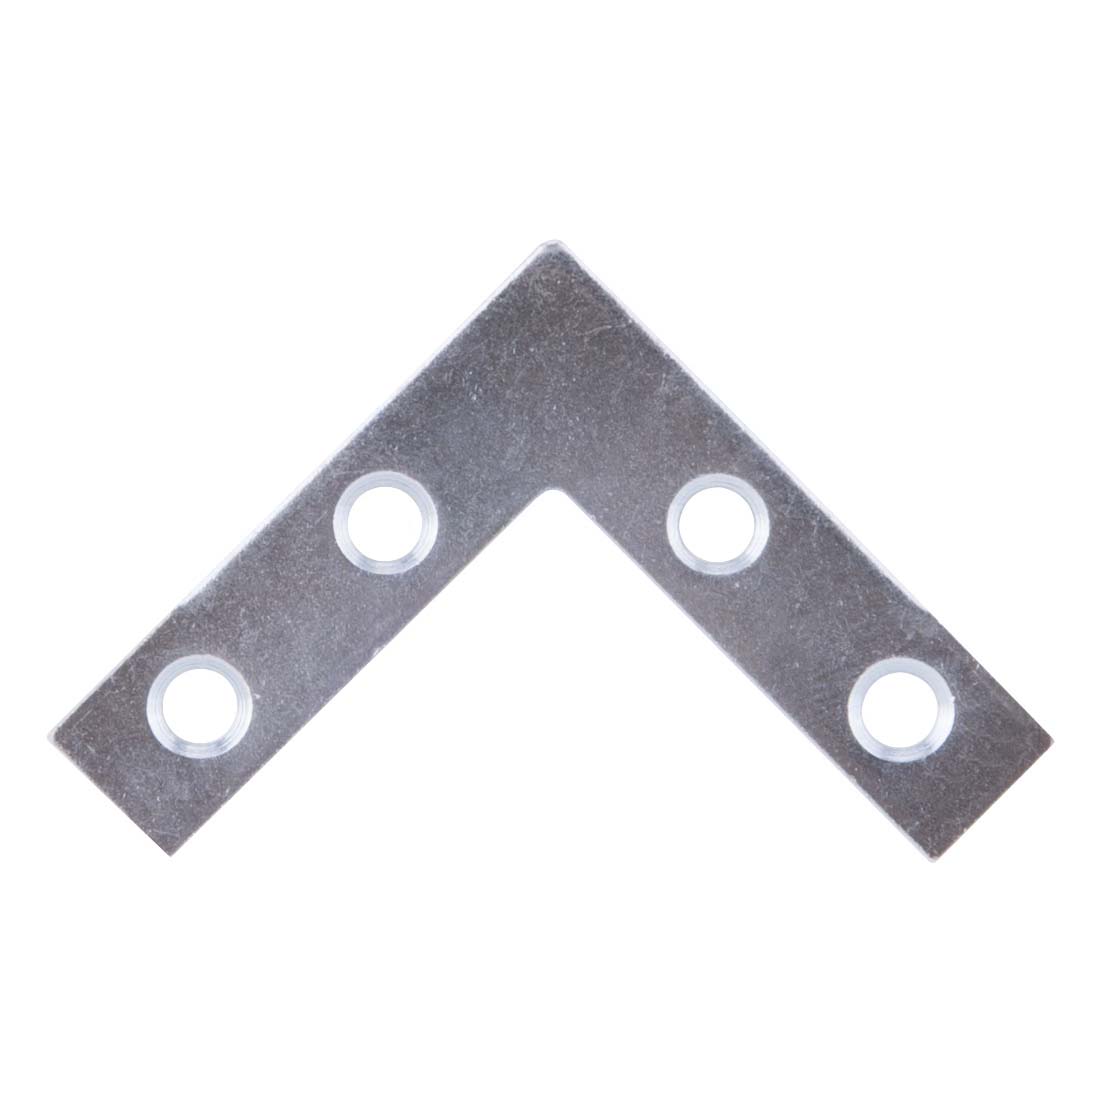 FC-Z015-01 Corner Brace, 1-1/2 in L, 1-1/2 in W, 1.5 mm Thick, Steel, Silver, Zinc